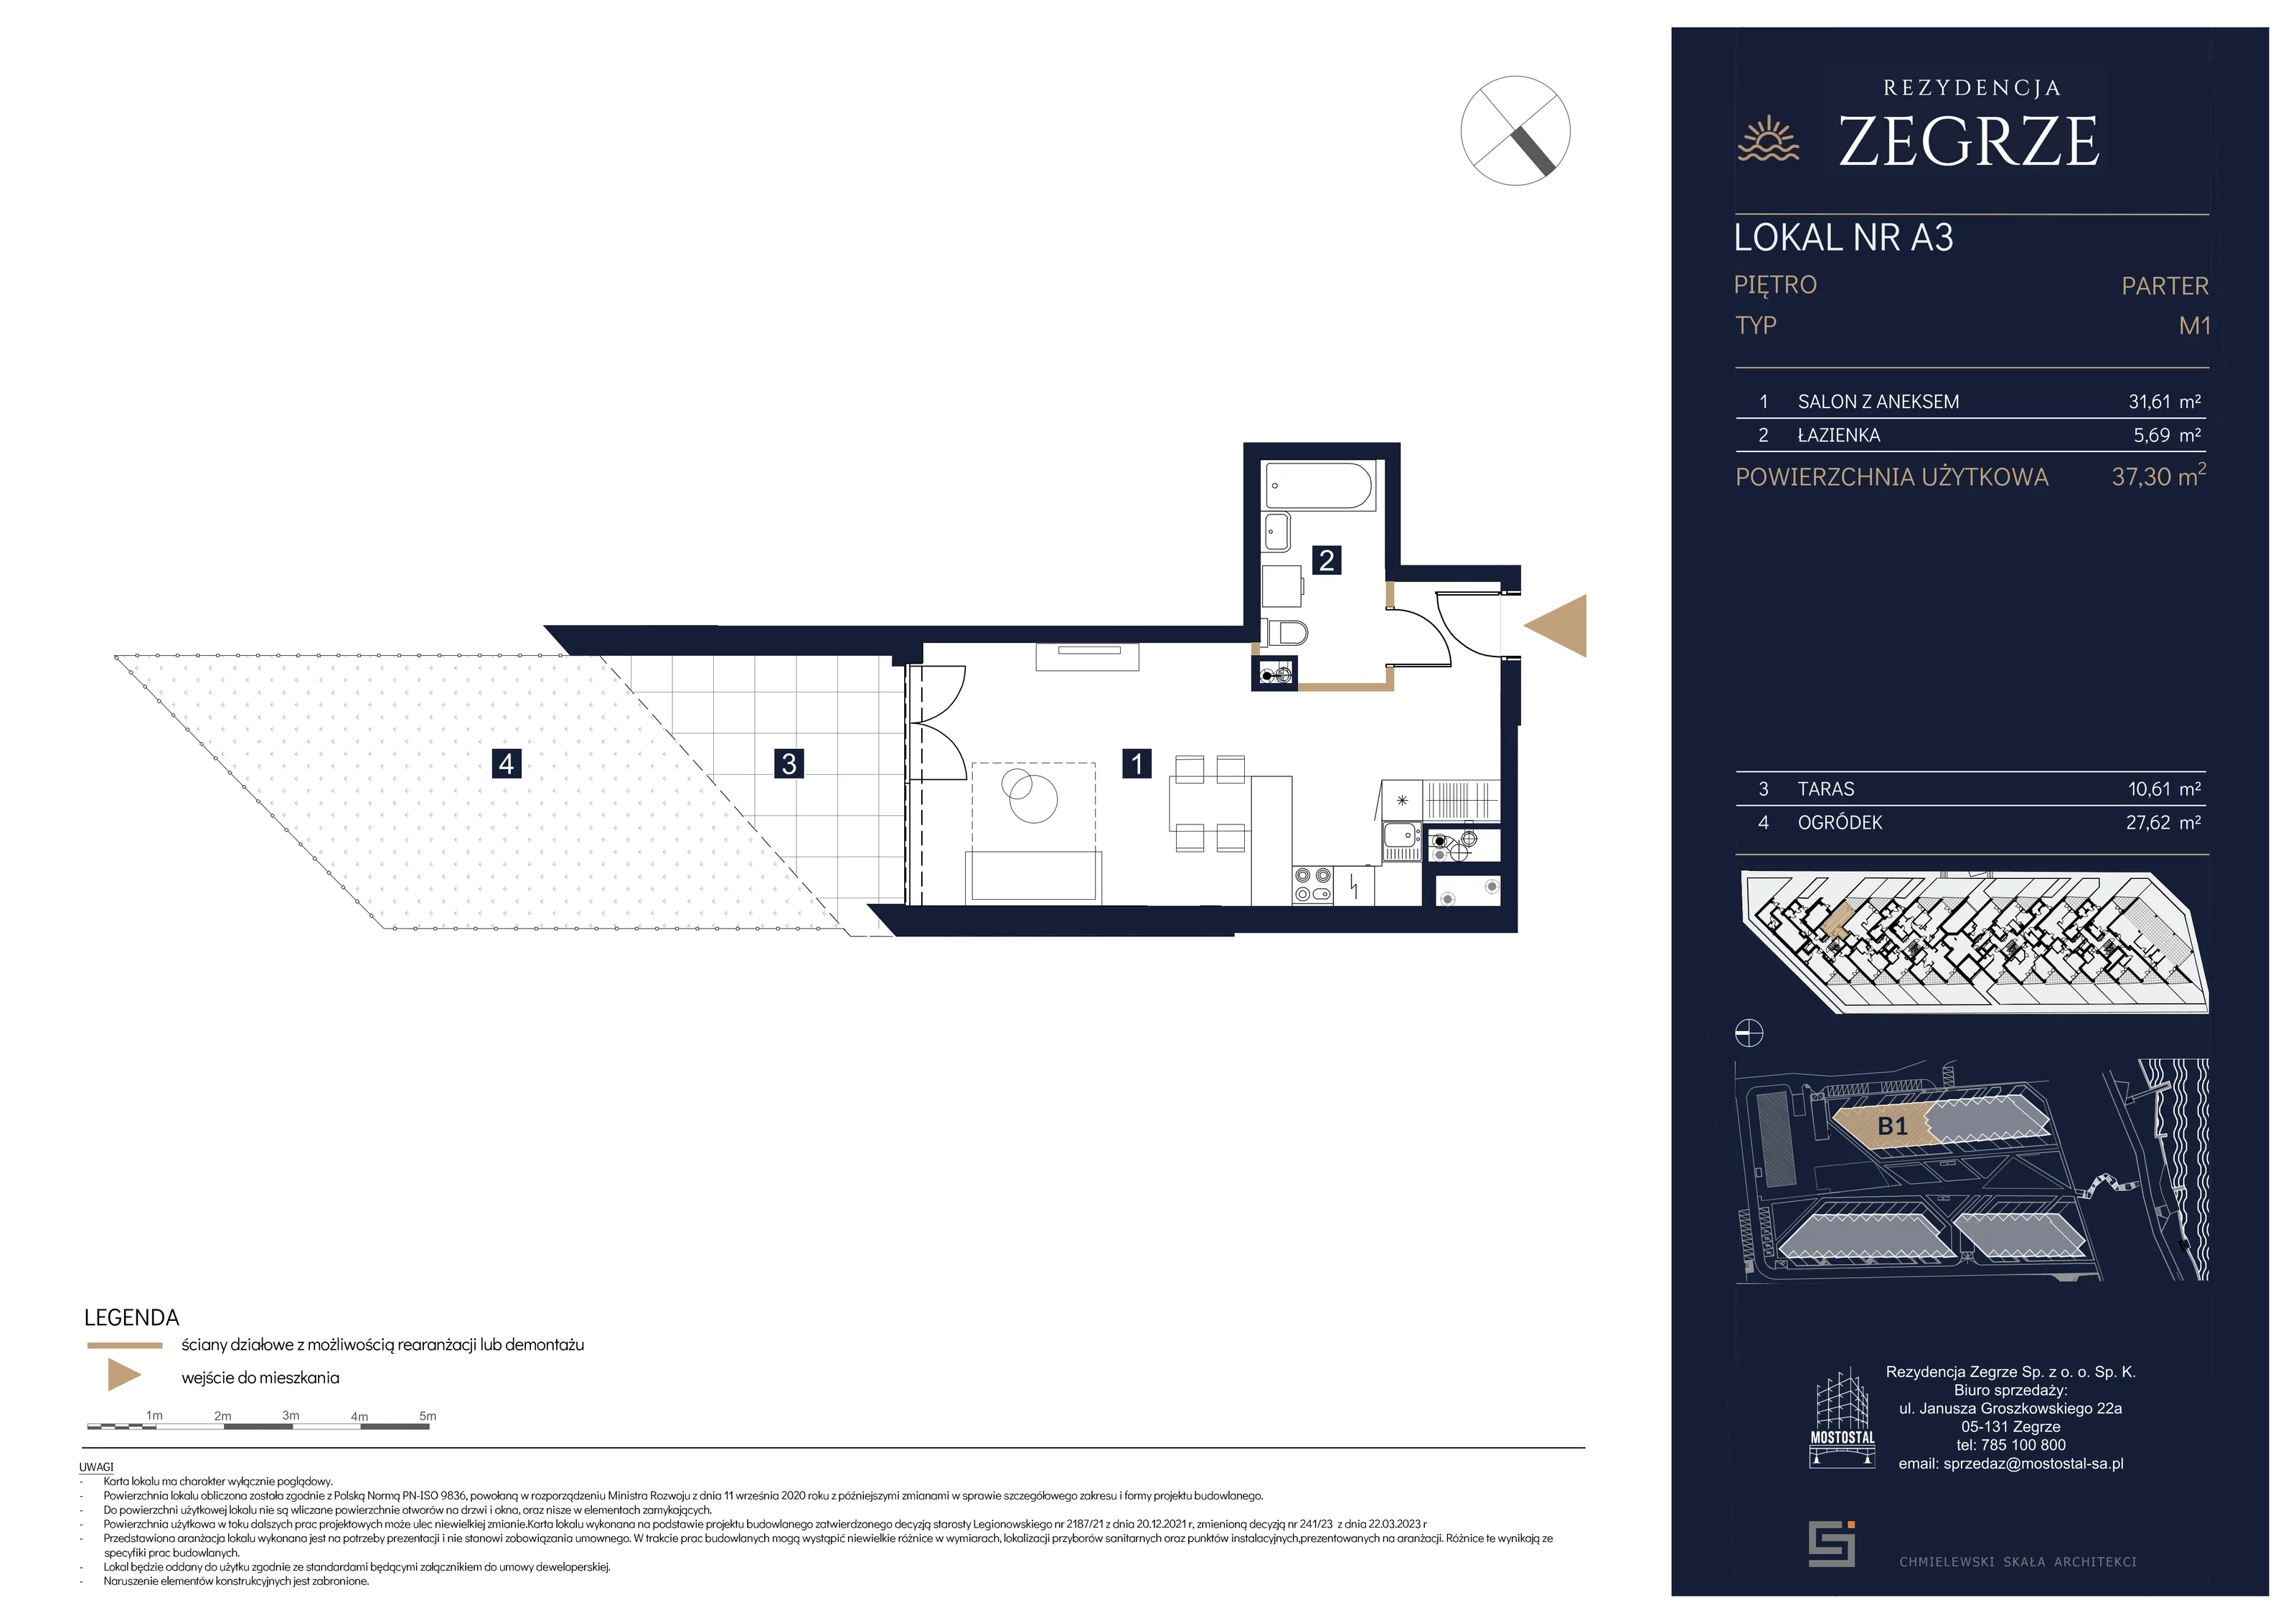 Mieszkanie 37,30 m², parter, oferta nr B1.1.A.3, Rezydencja Zegrze II, Zegrze, ul. Groszkowskiego 22A